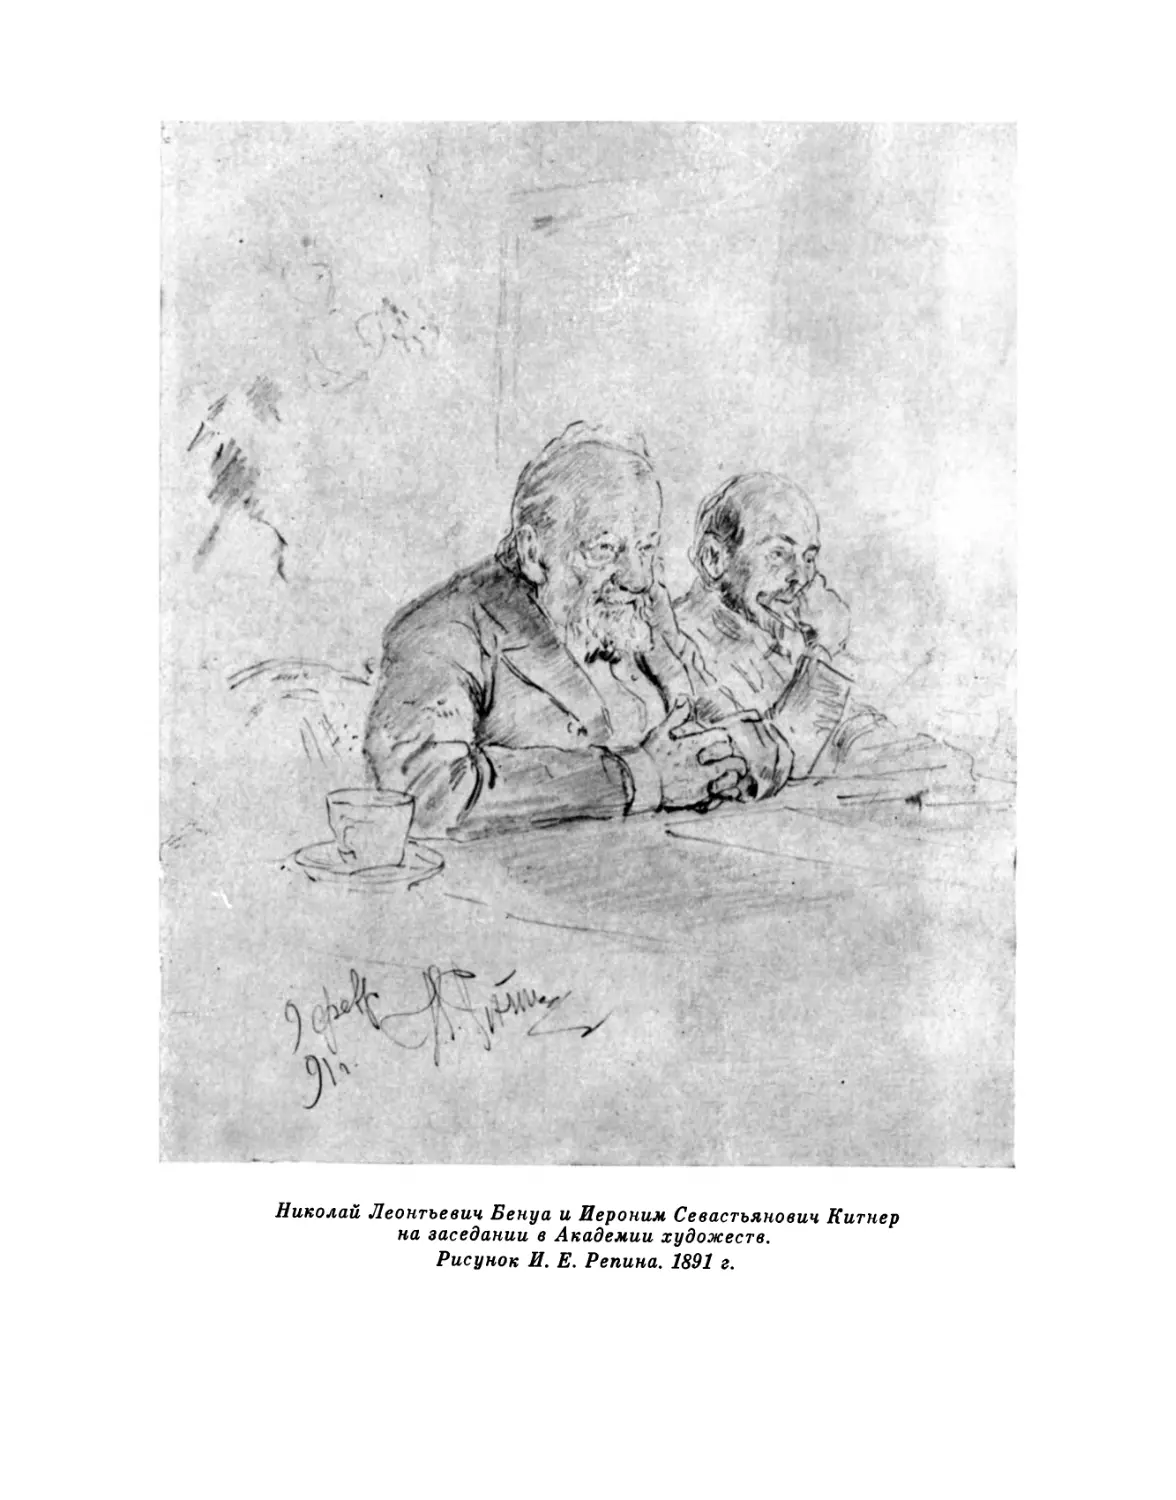 Н. Л. Бенуа и И. С. Китнер на заседании в Академии художеств. Рисунок И. Е. Репина